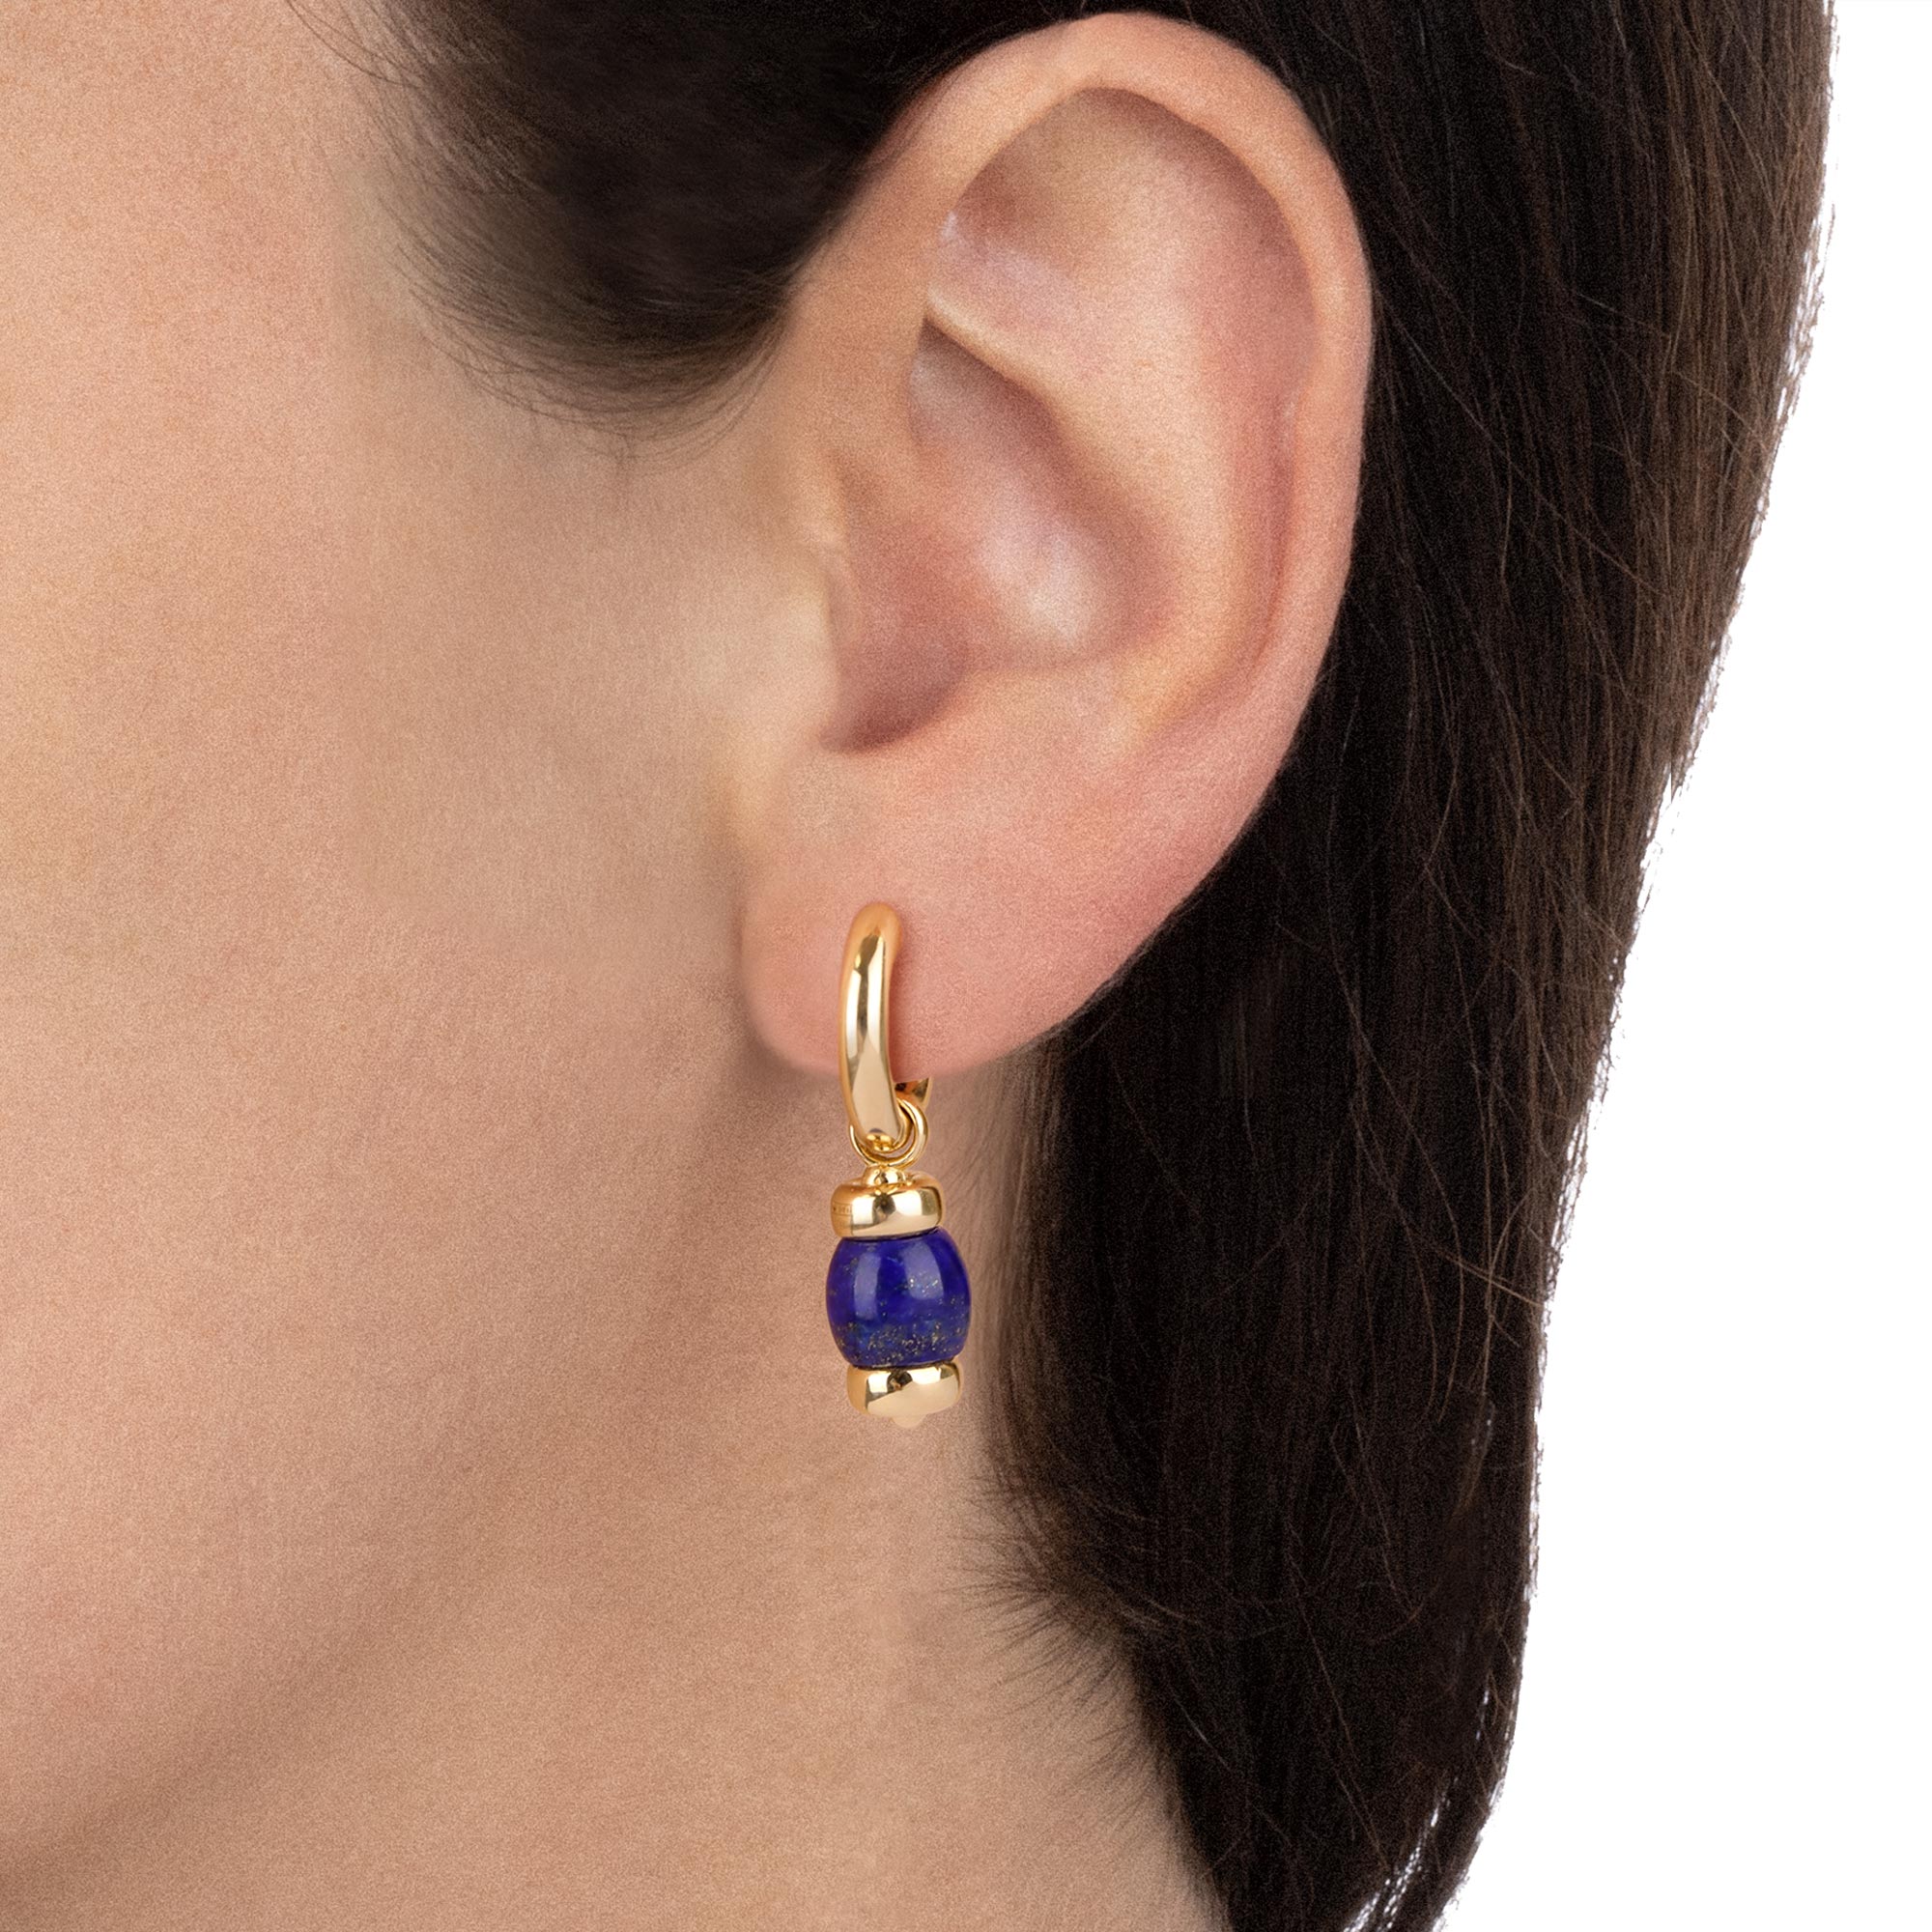 Worn - Le Carrousel Earrings Lapis lazuli